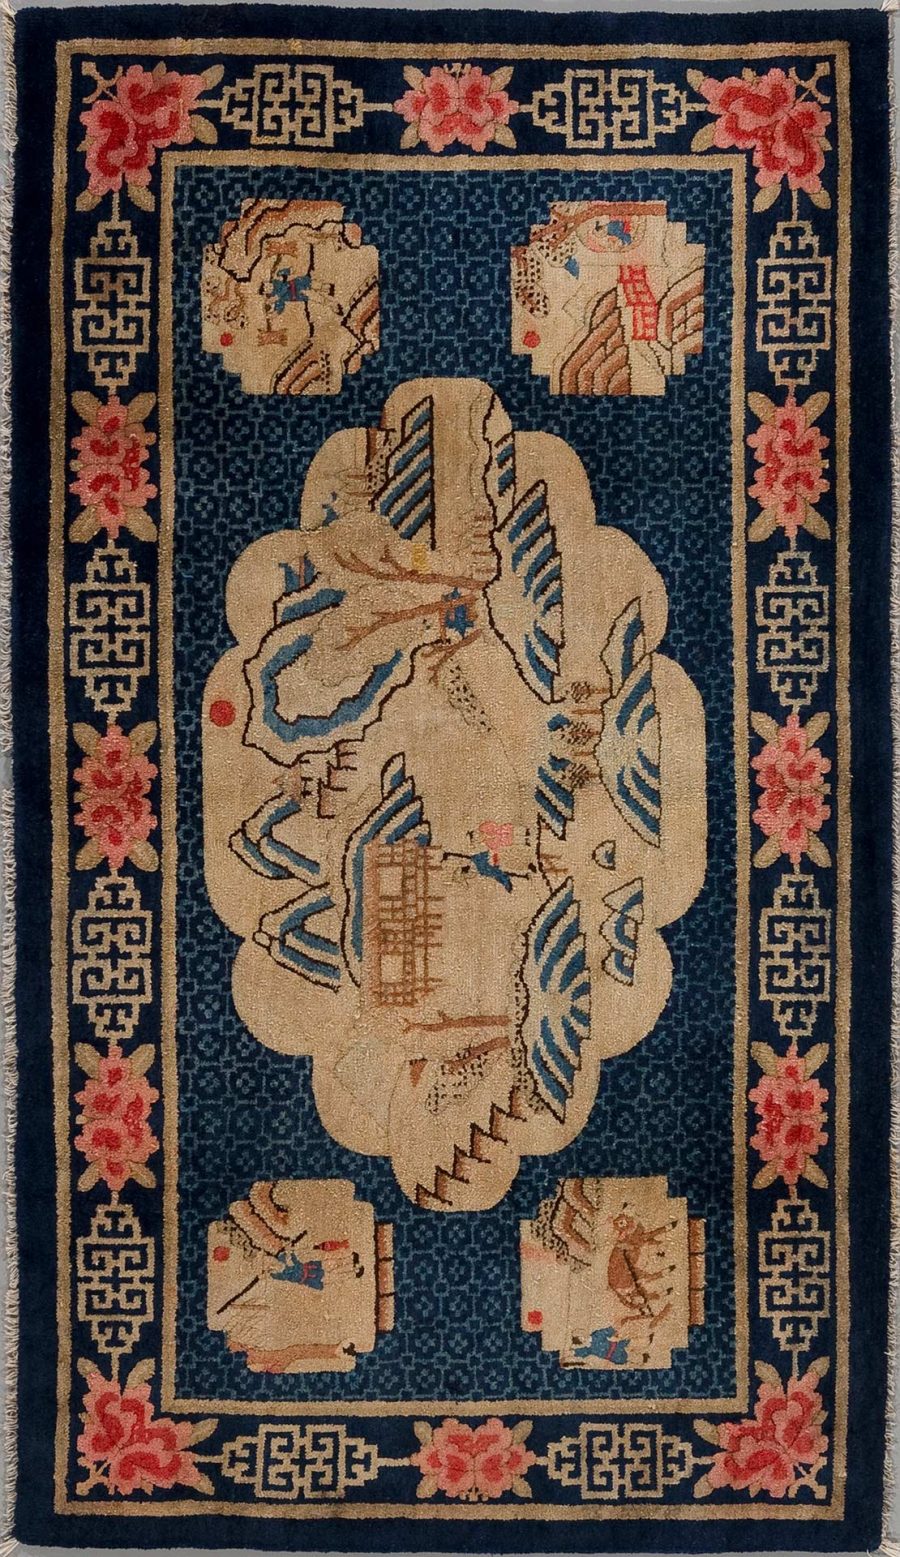 Antiker handgeknüpfter Teppich mit zentralem Drachenmotiv und floralen Akzenten in beige, blau und rosa Tönen, umgeben von einem angedeuteten Rahmen mit geometrischen Mustern und Eckmotiven, die Bücher und Vasen darstellen.